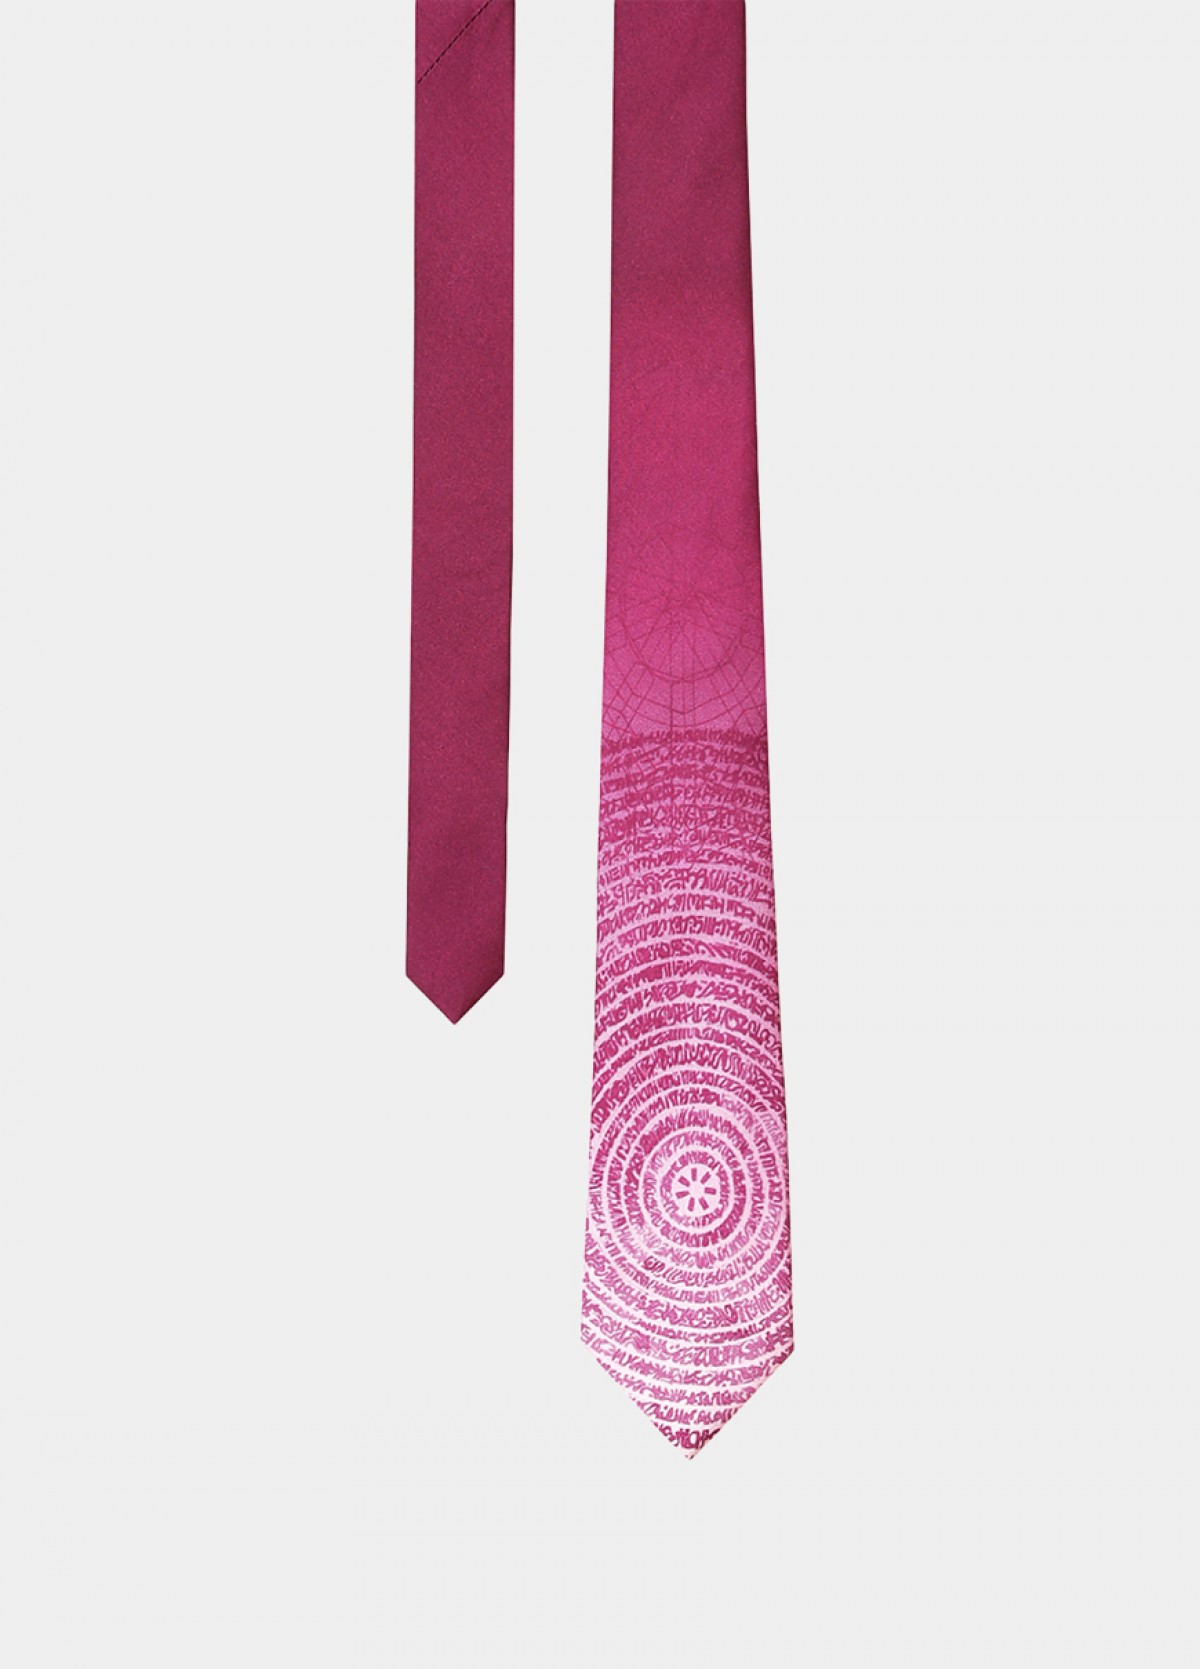 The Printed Silk Necktie